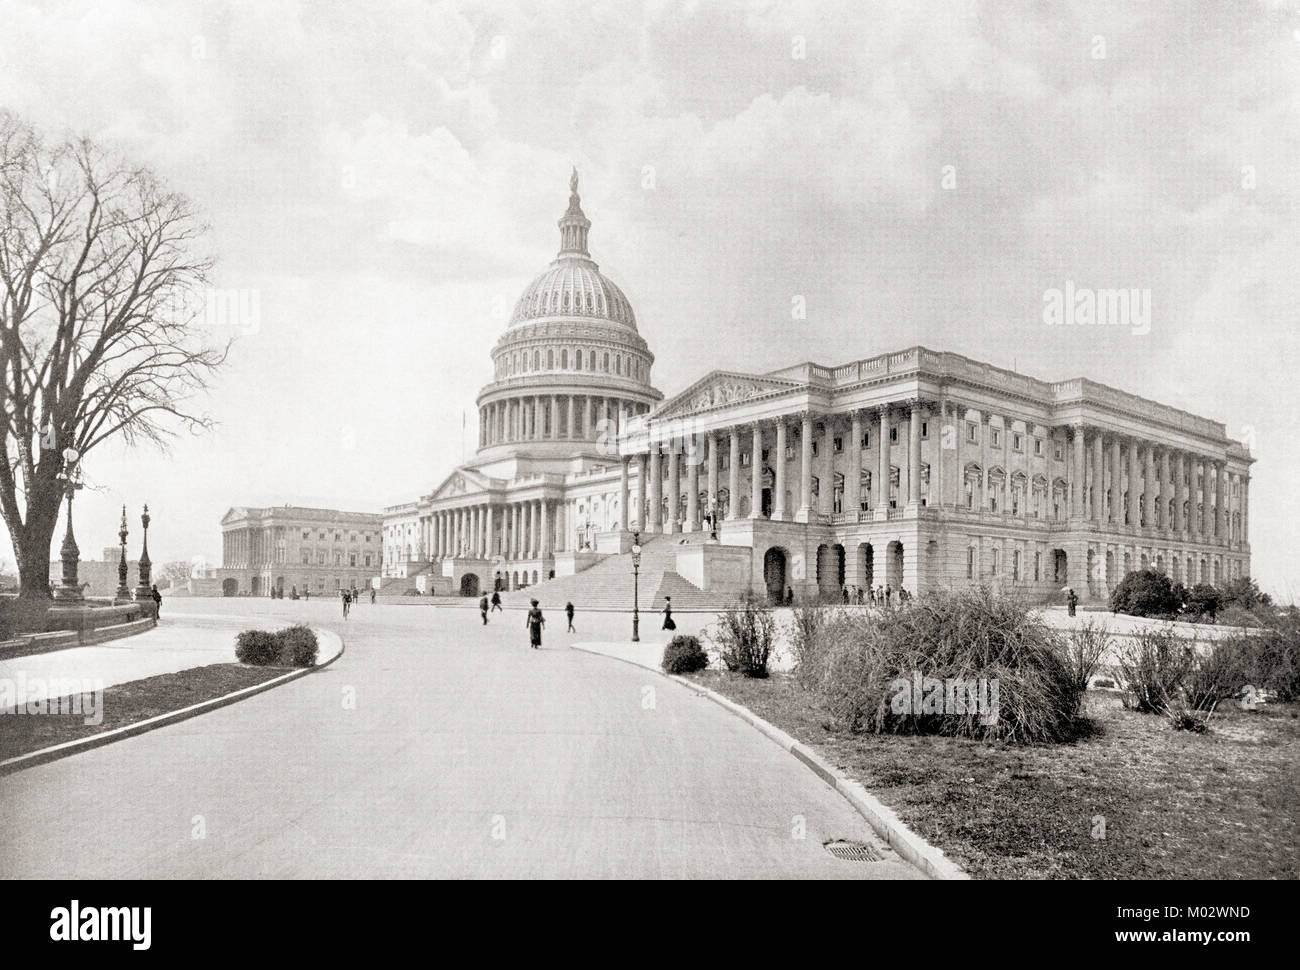 Le United States Capitol, aka Capitol Building, Washington D.C., Etats-Unis d'Amérique, vu ici c.1911. Des merveilles du monde, publié c.1911. Banque D'Images